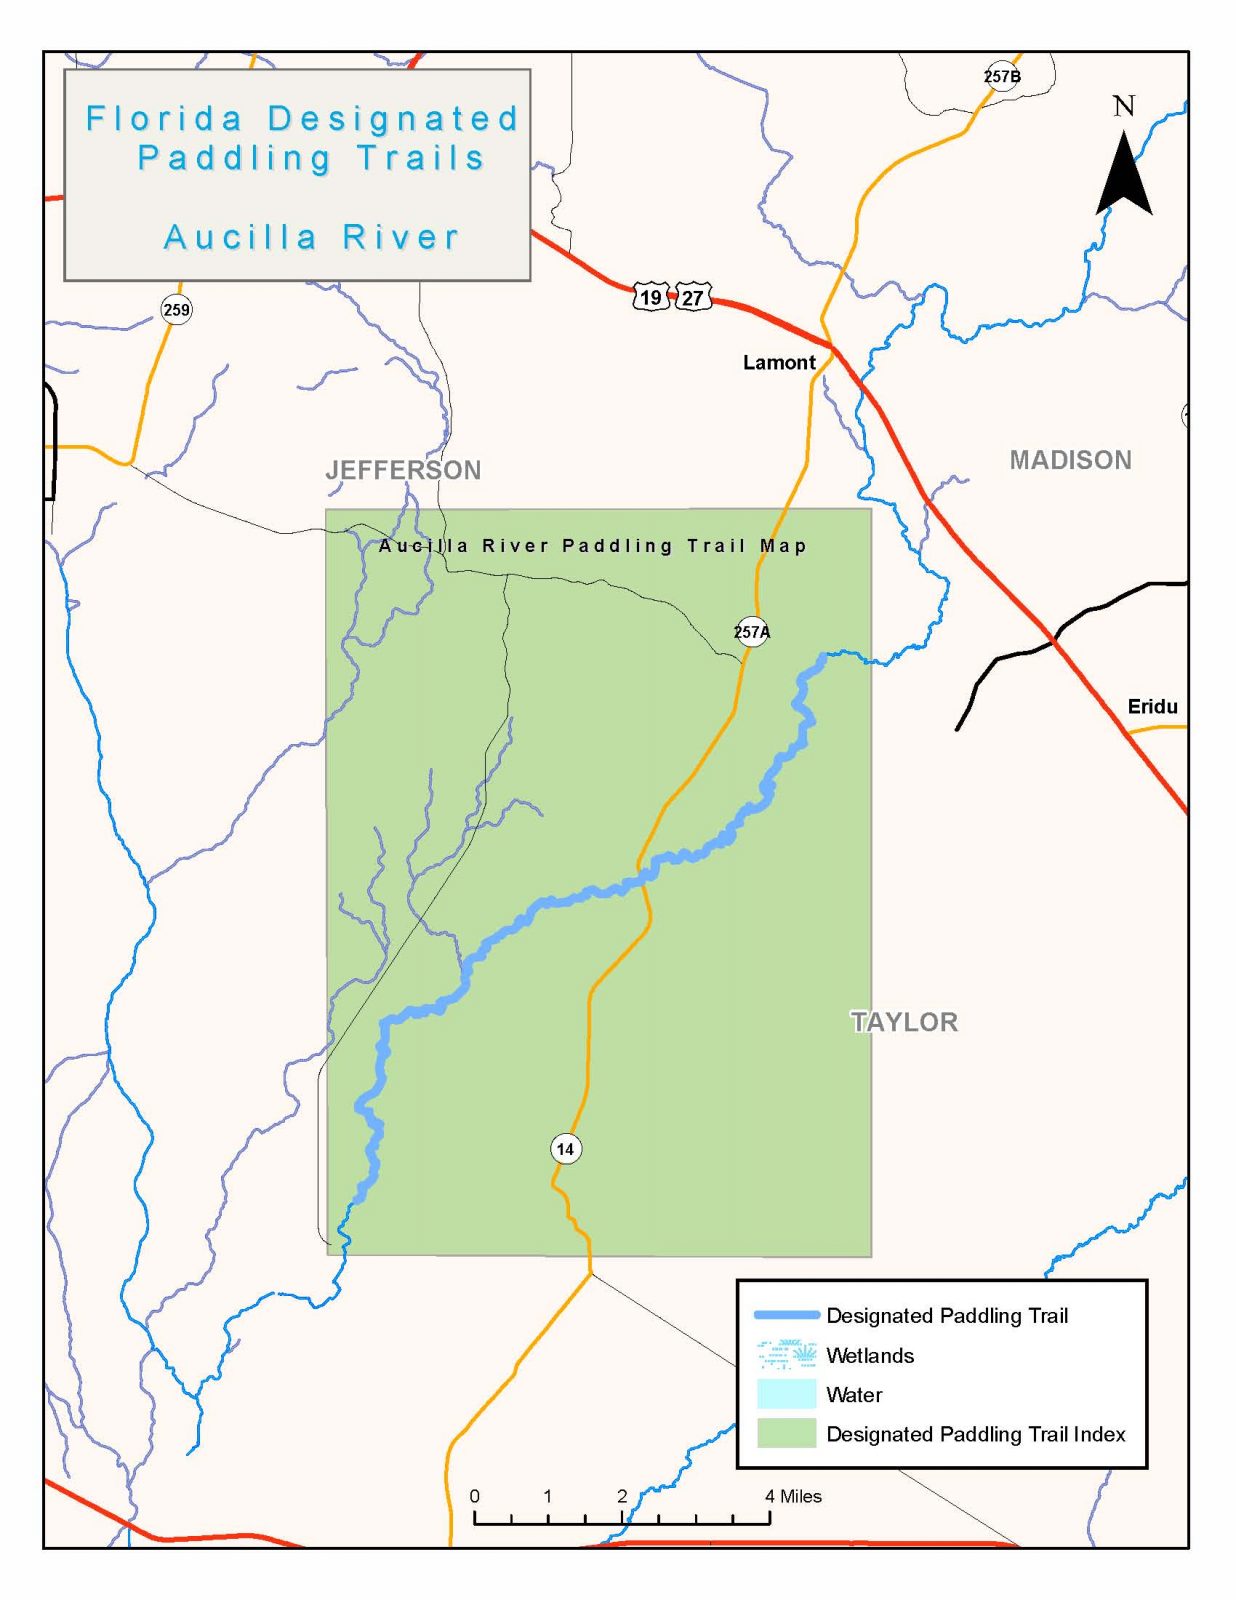 Aucilla River